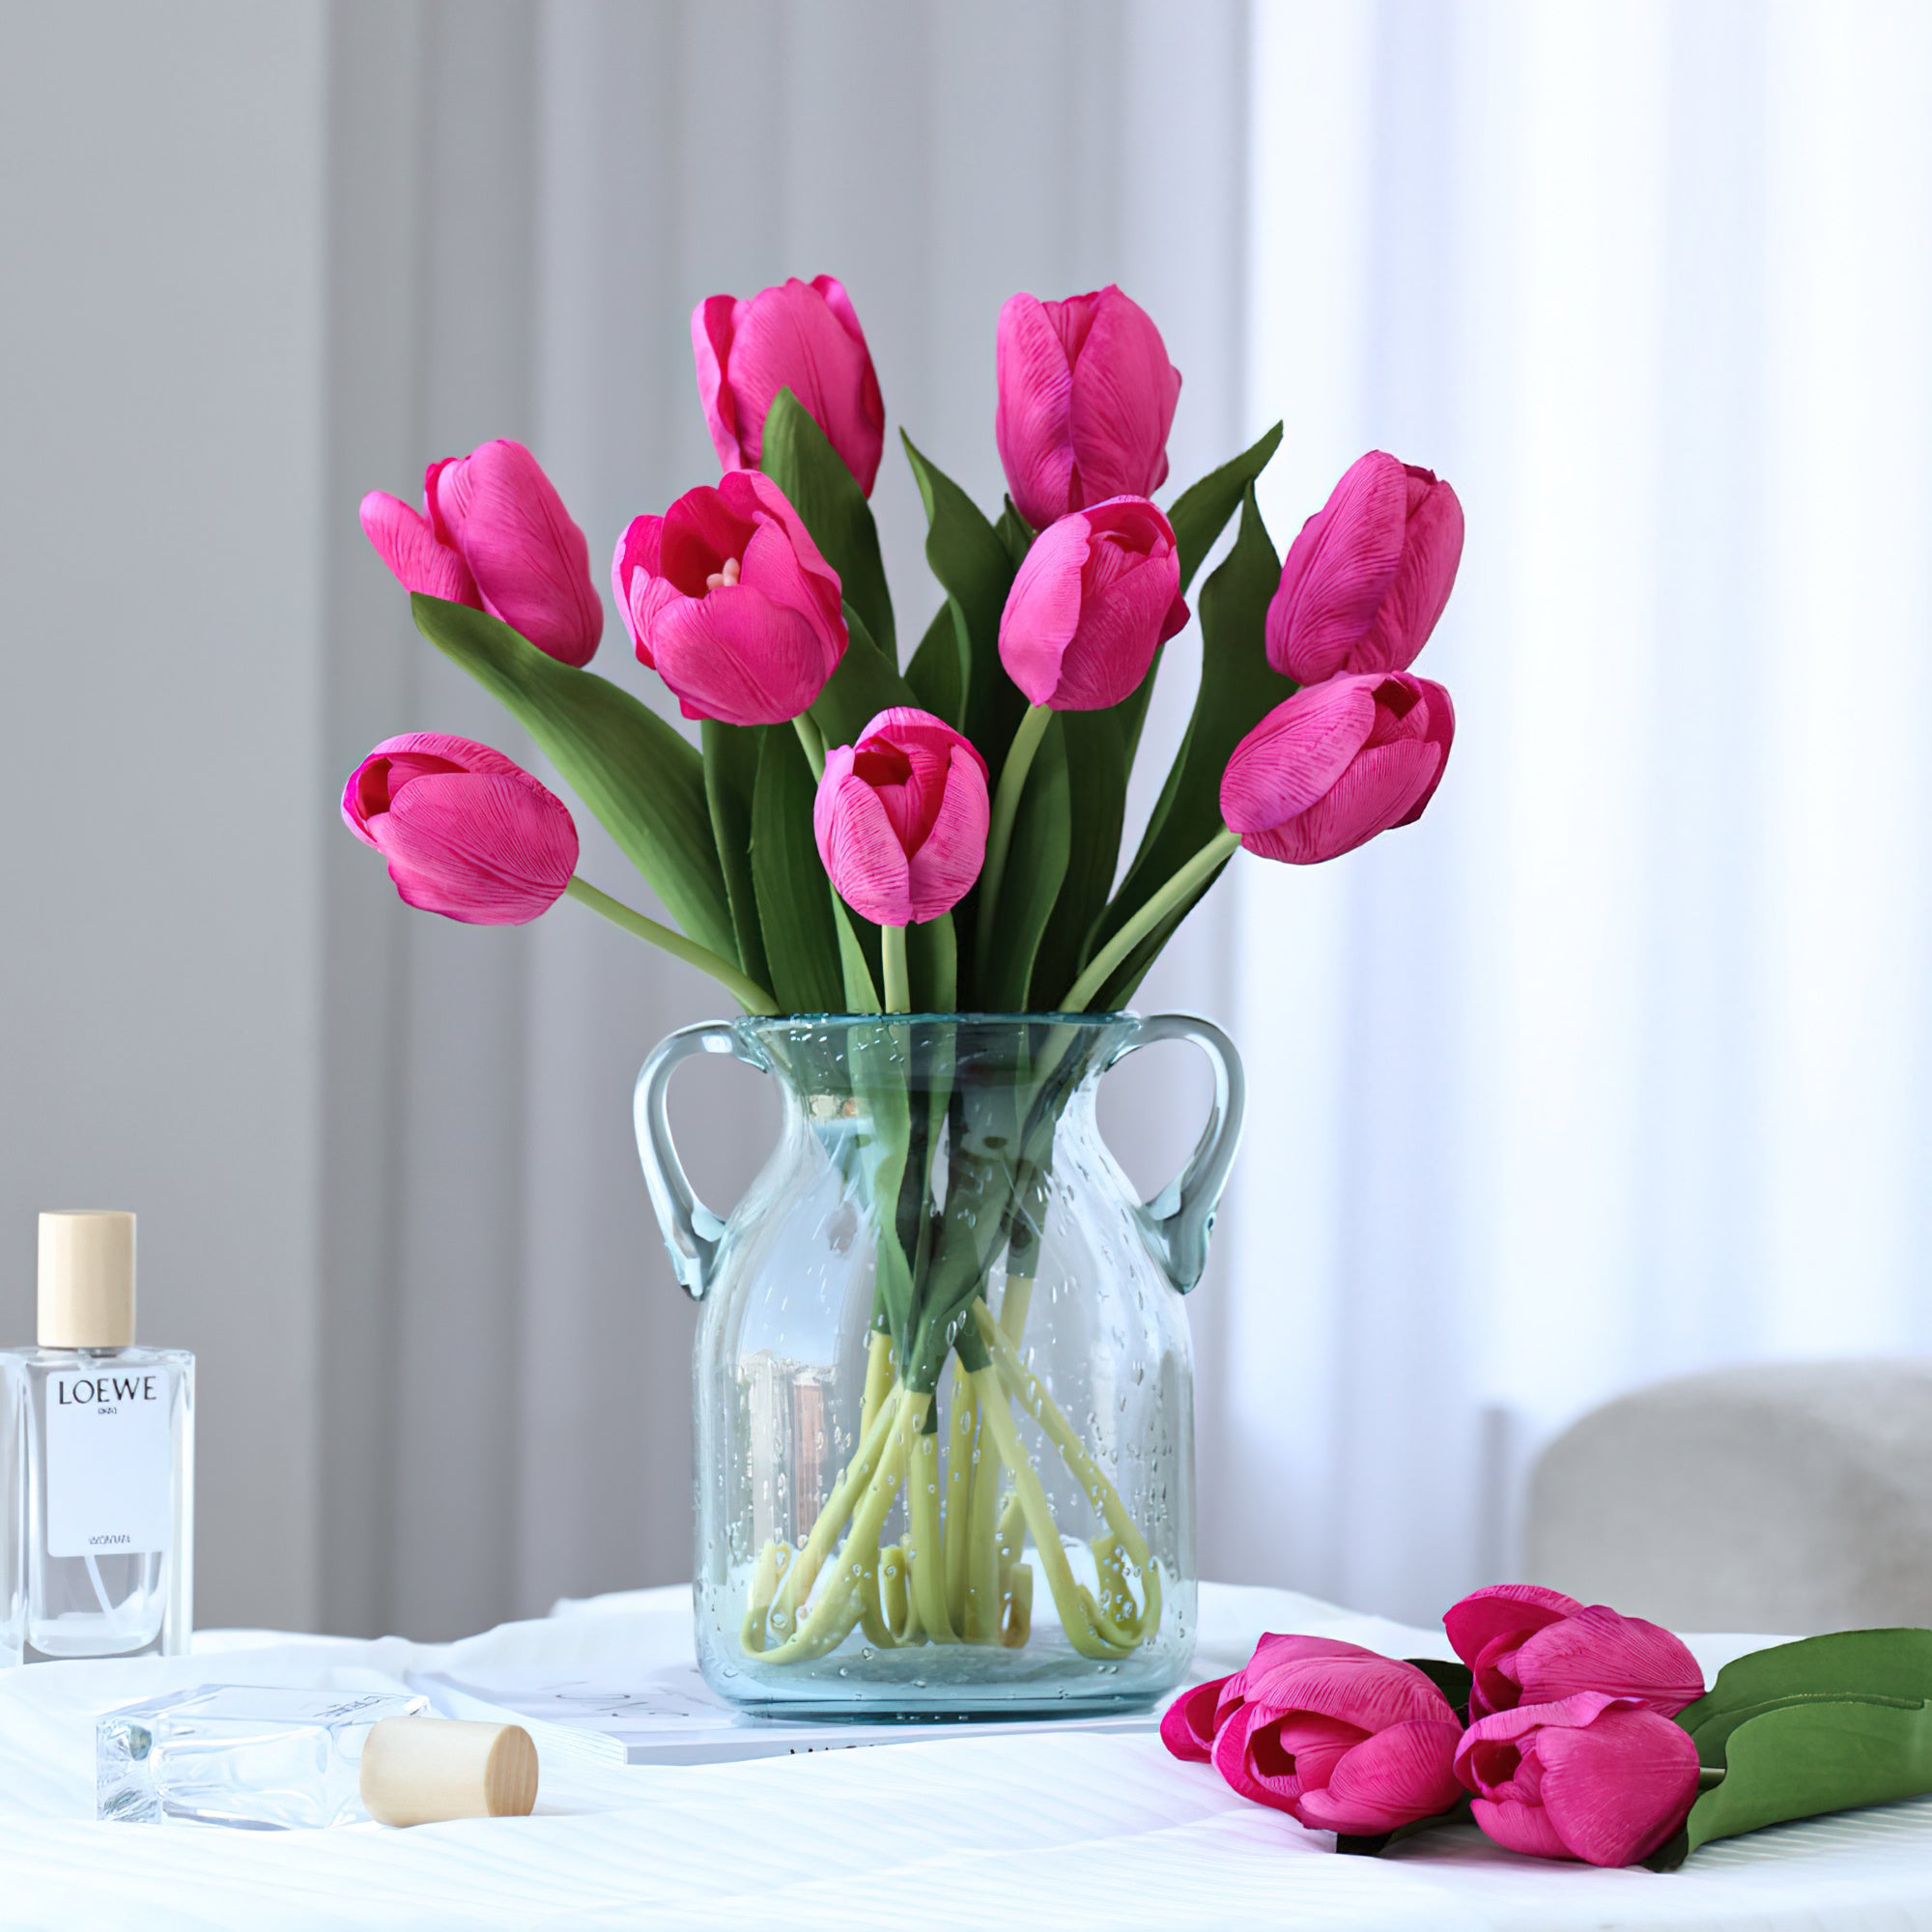 زهور التوليب الحريرية الواقعية الغنية بالرطوبة-باقة زهور متعددة اللوان نابضة بالحياة لديكور المنزل الحسي